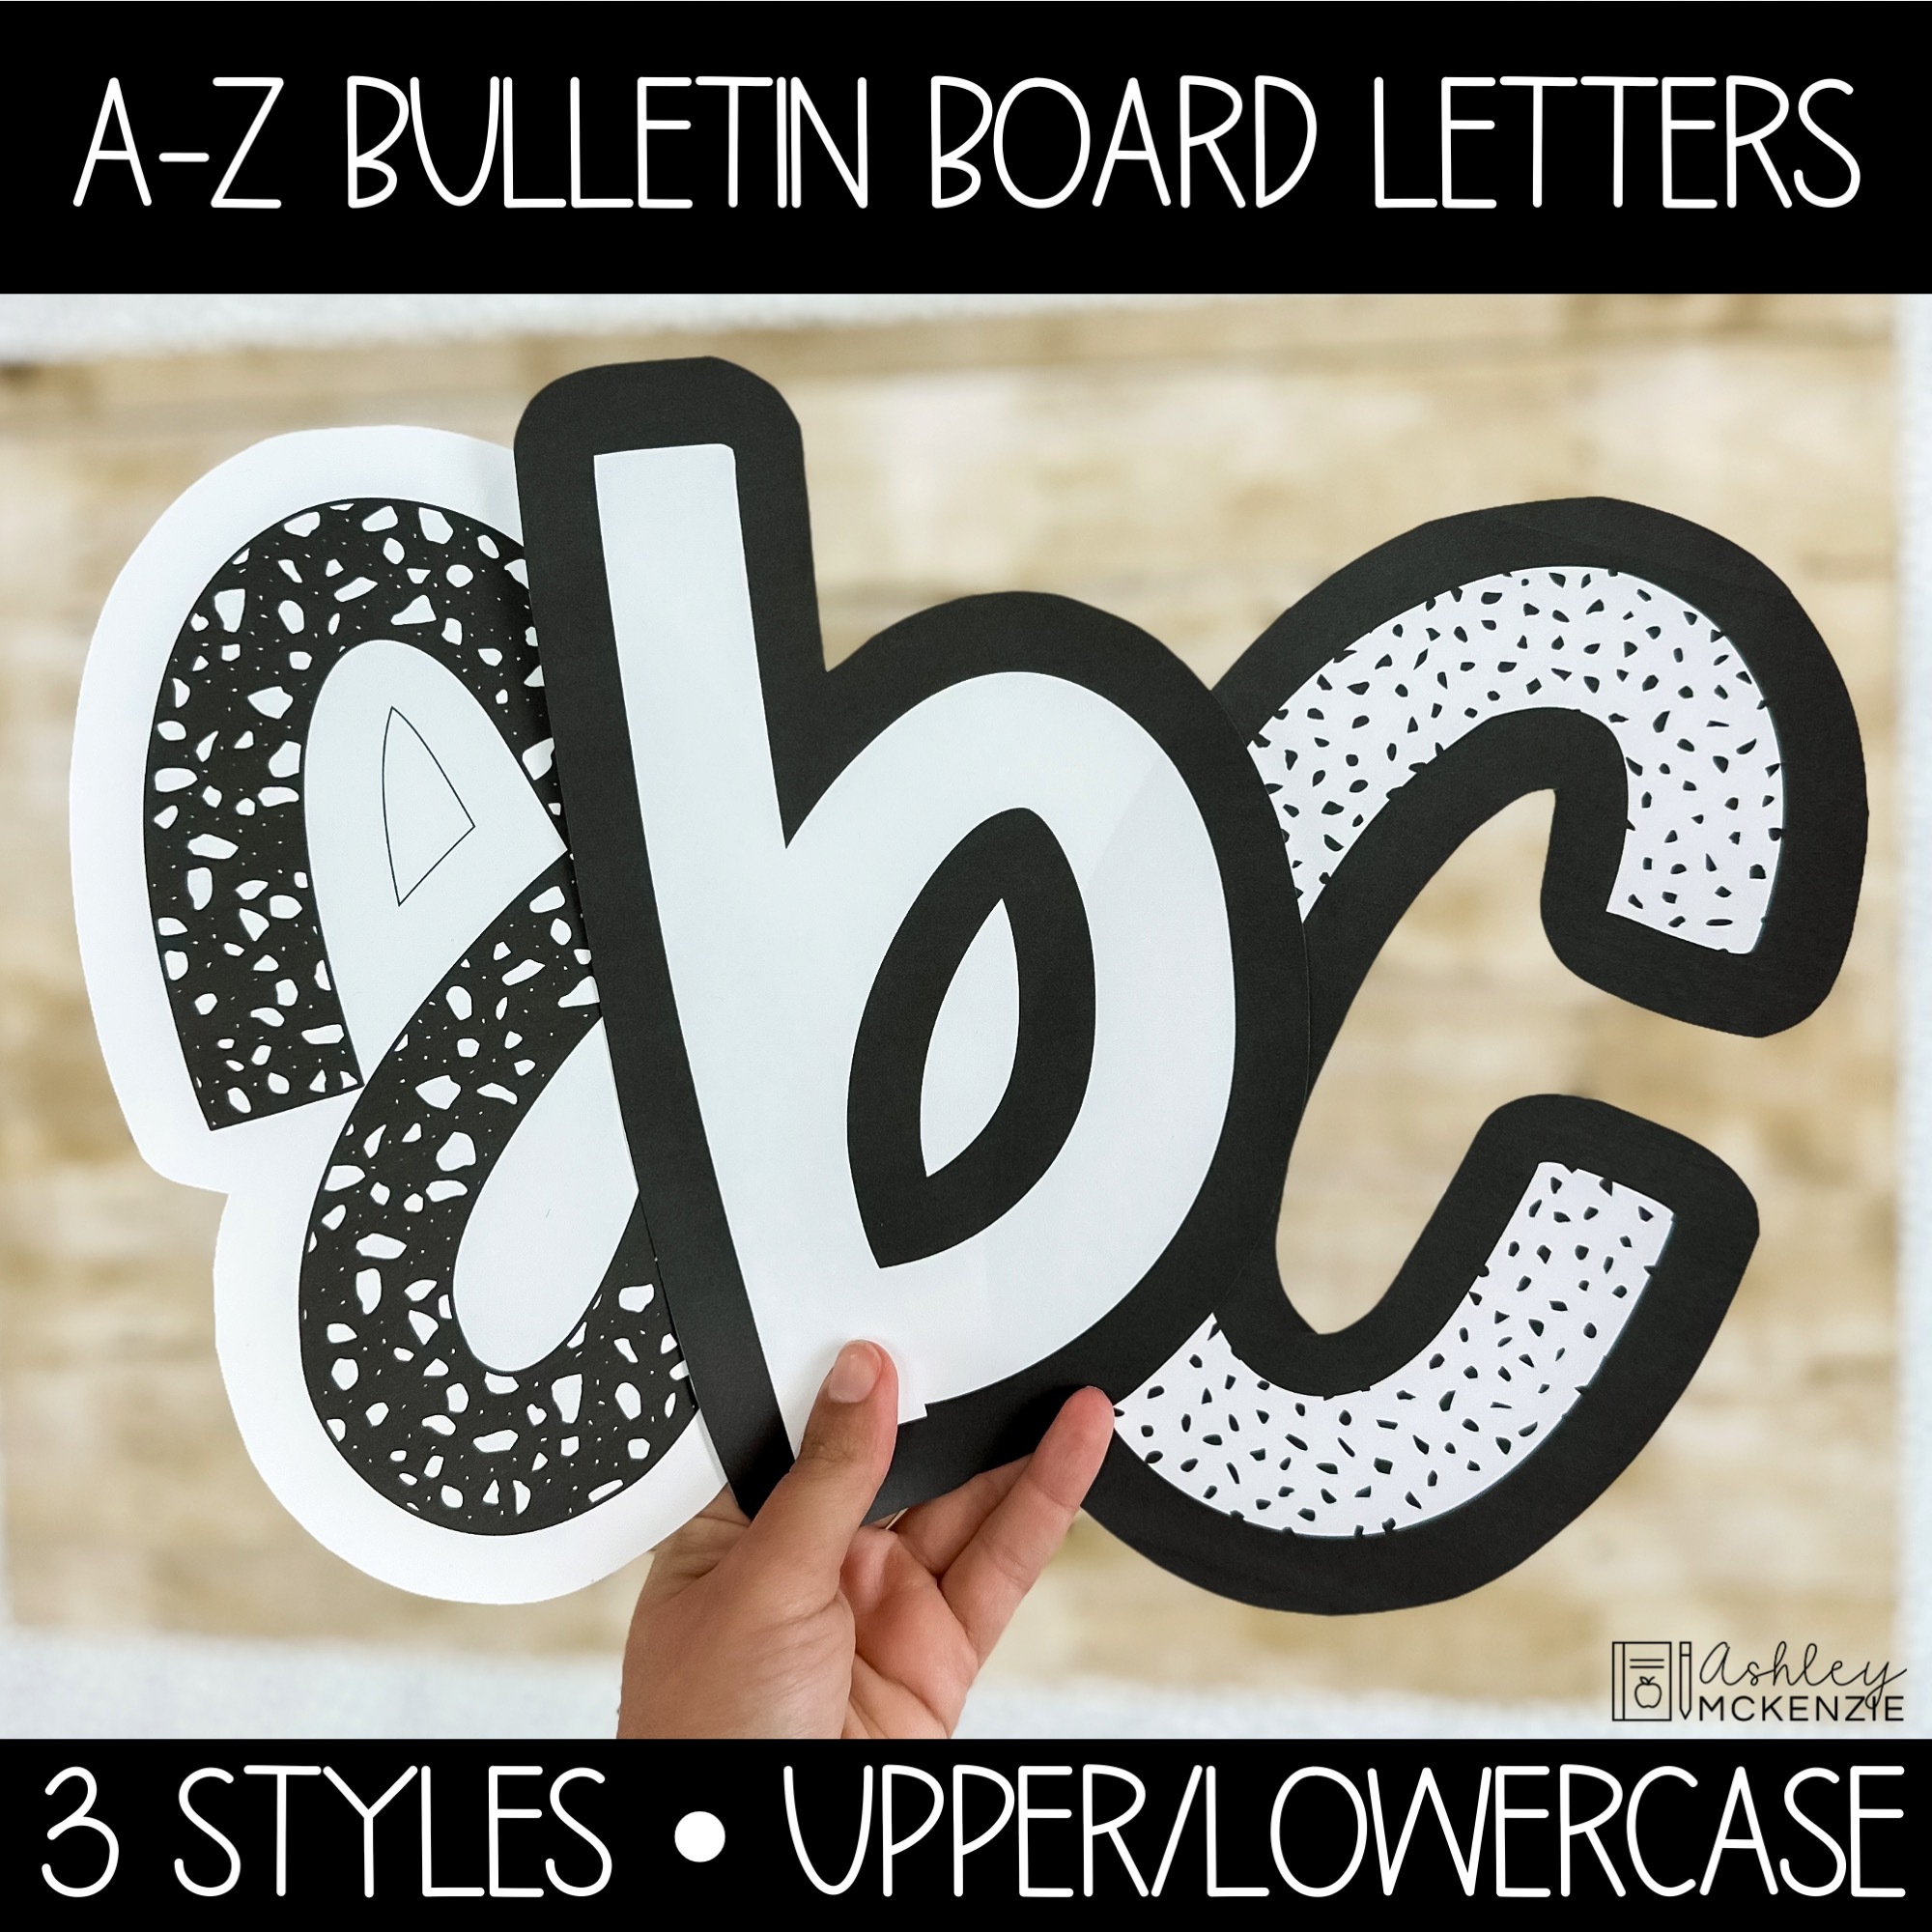 Chalkboard Bulletin Board Letters